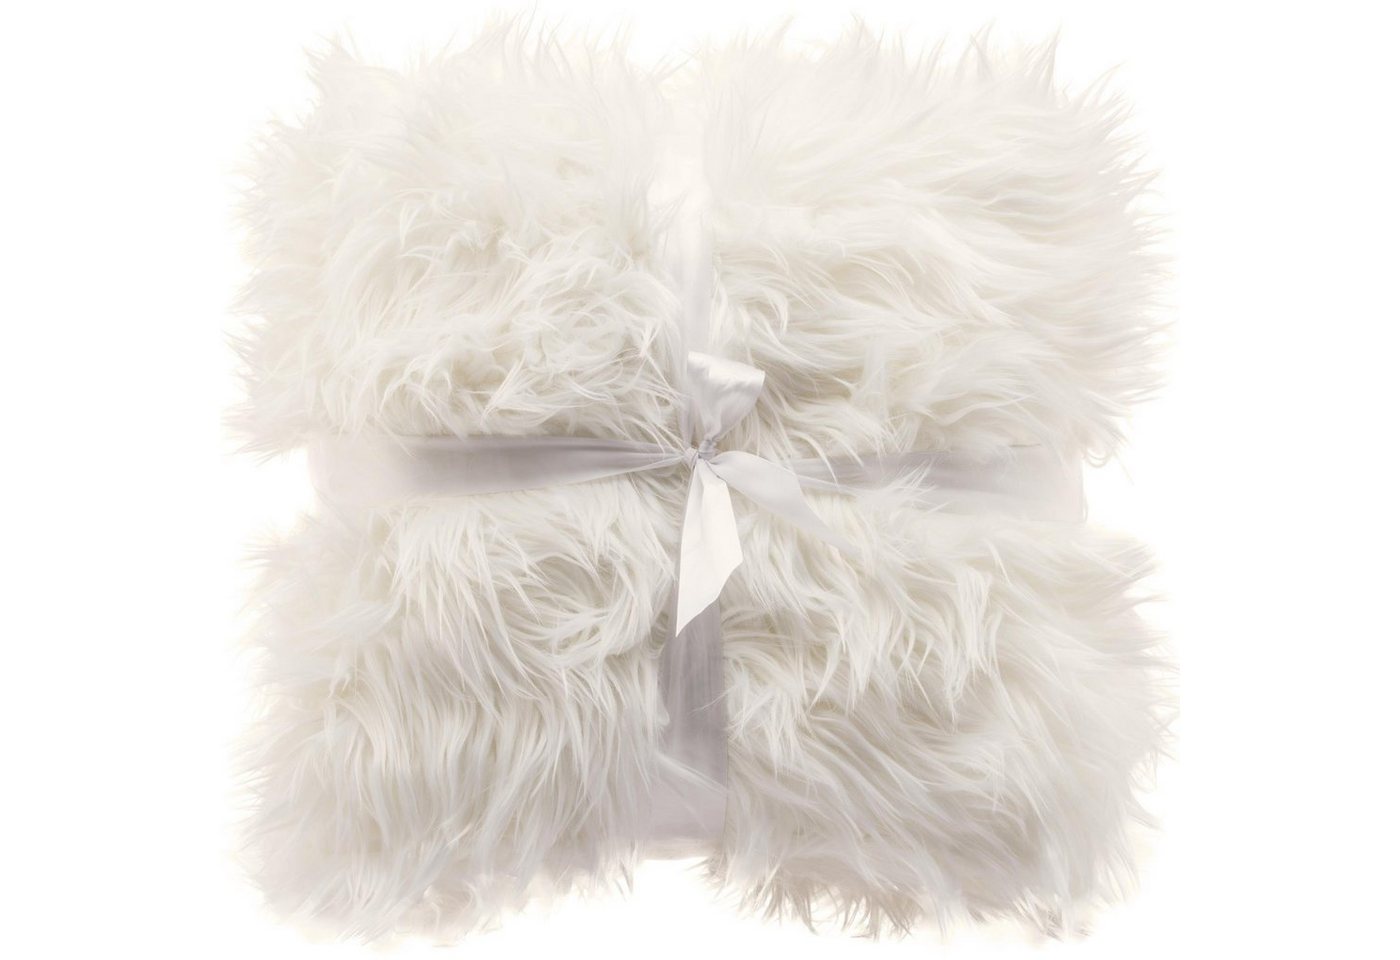 Wohndecke Grace Kuscheldecke Tagesdecke Sofa Fellimitat warm XL 180x200cm weiß, CelinaTex, flauschig,kuschelweich,weich,Wohnraumdekoration,waschbar,effektvoll von CelinaTex